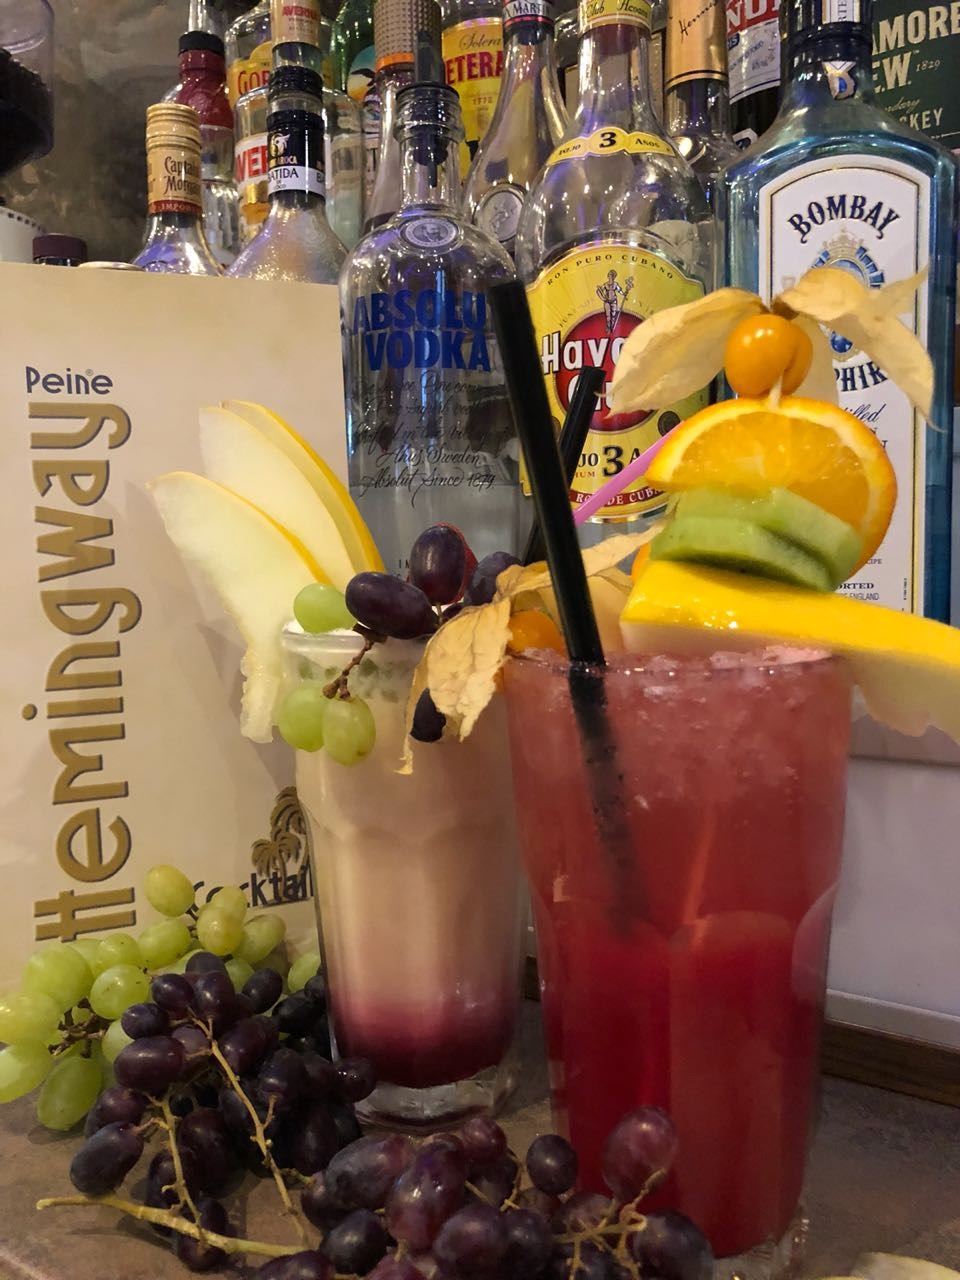 Hemingway Peine - Restaurant & Bar - Cocktails